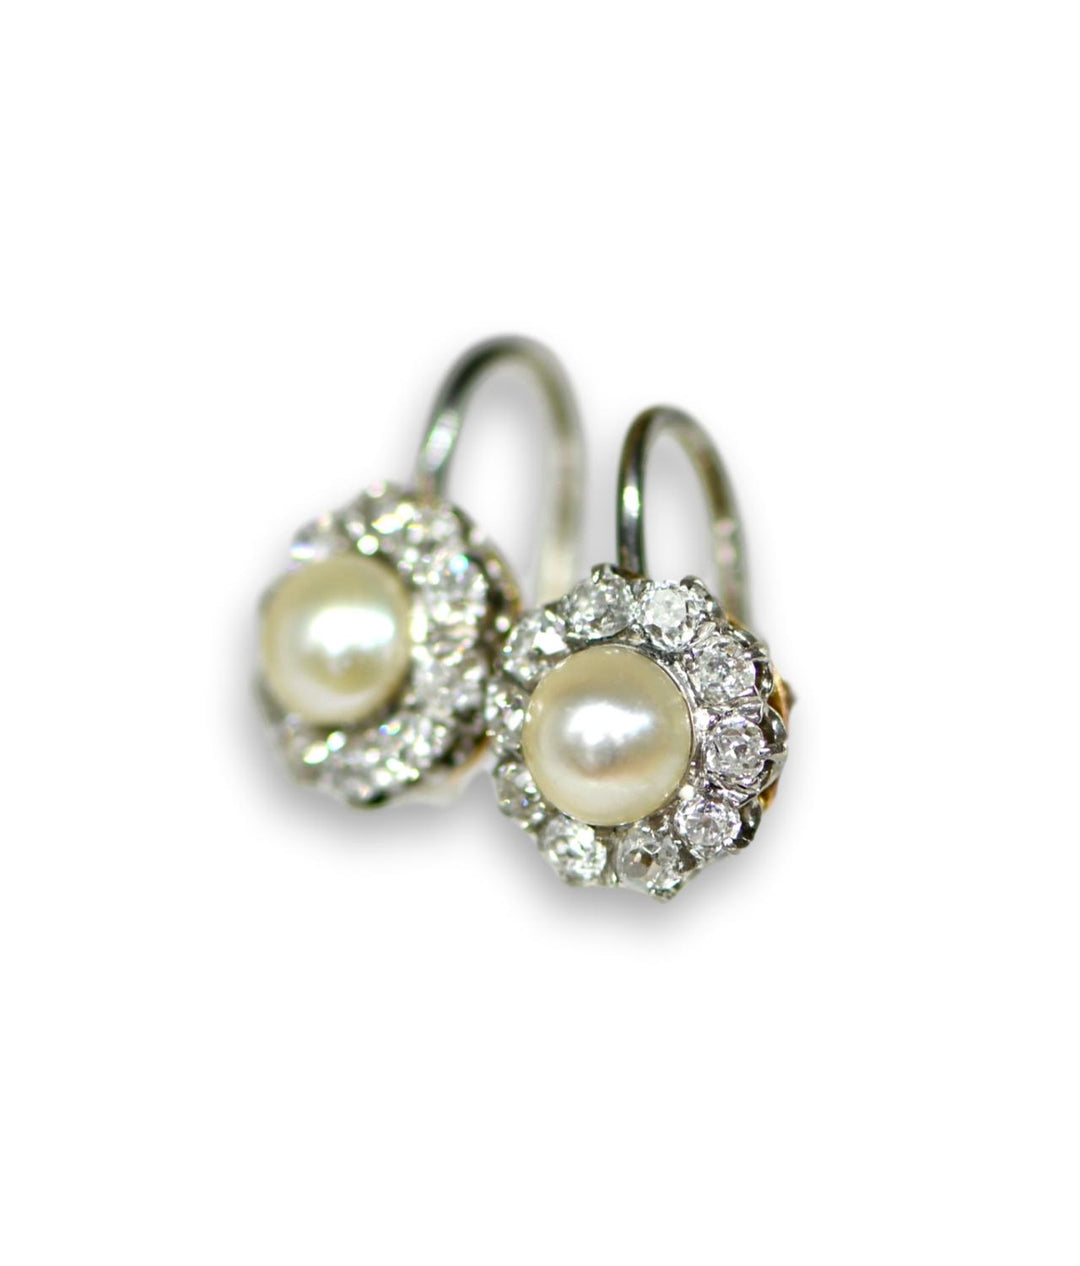 Edwardian Pearl Diamond Cluster Earrings - SOLD